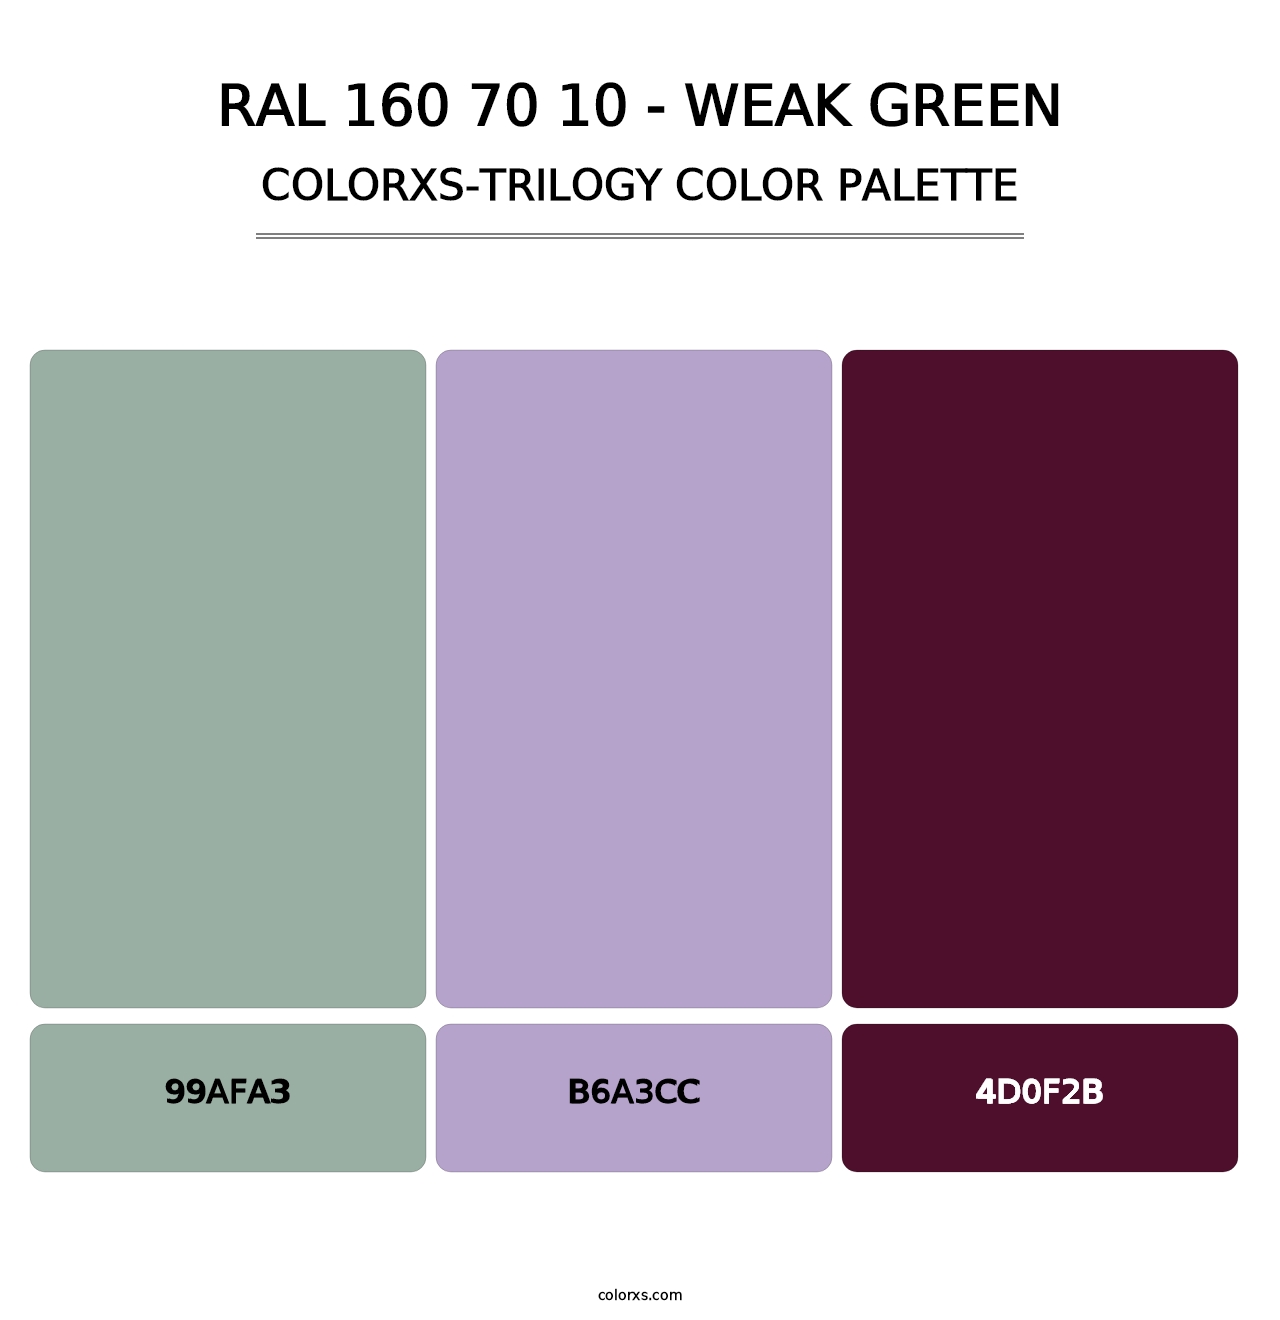 RAL 160 70 10 - Weak Green - Colorxs Trilogy Palette